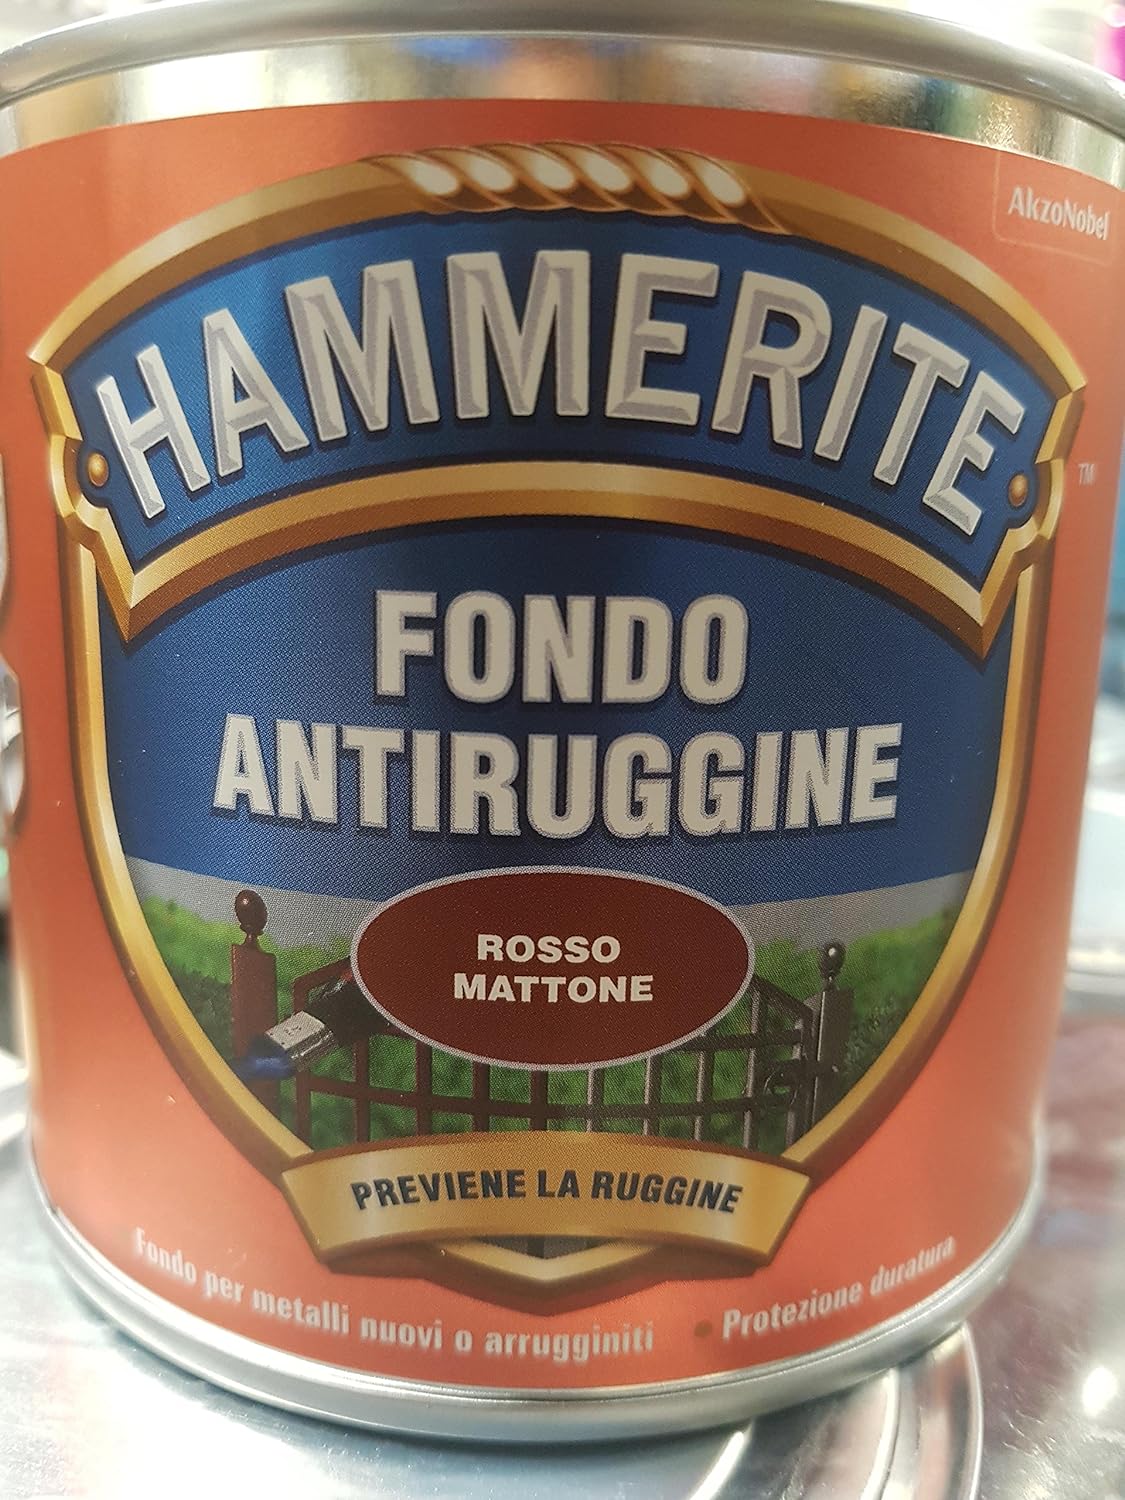 Fondo Anti-Ruggine, Rosso Mattone opaco (500 Ml), Hammerite